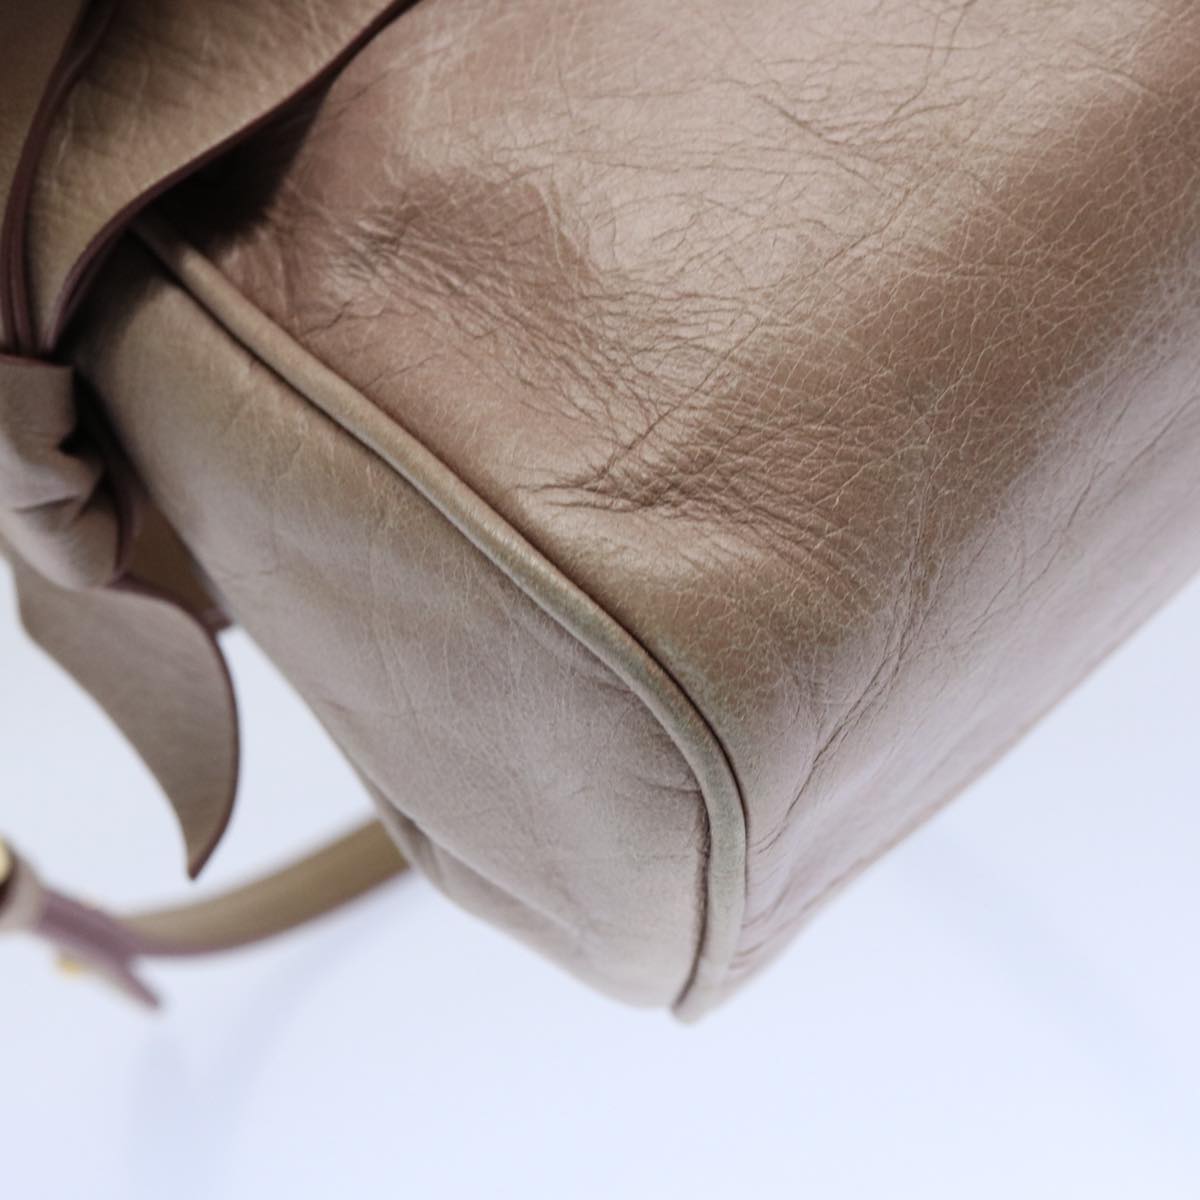 Miu Miu Shoulder Bag Leather Pink Auth fm3012